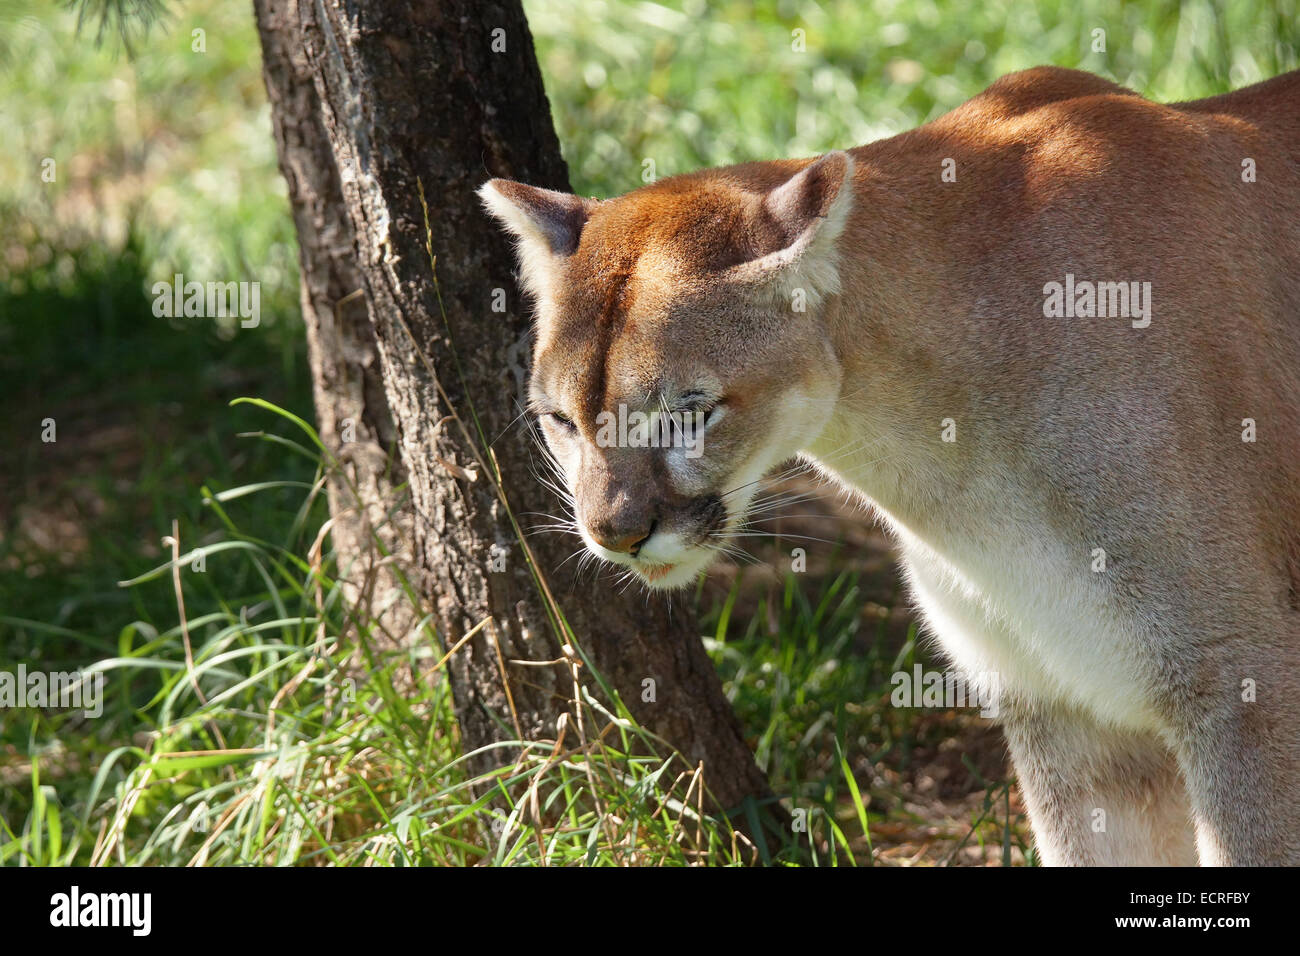 Wildkatze oder Puma, Puma Concolor, in schattigen natürlichen Lebensraum Stockfoto